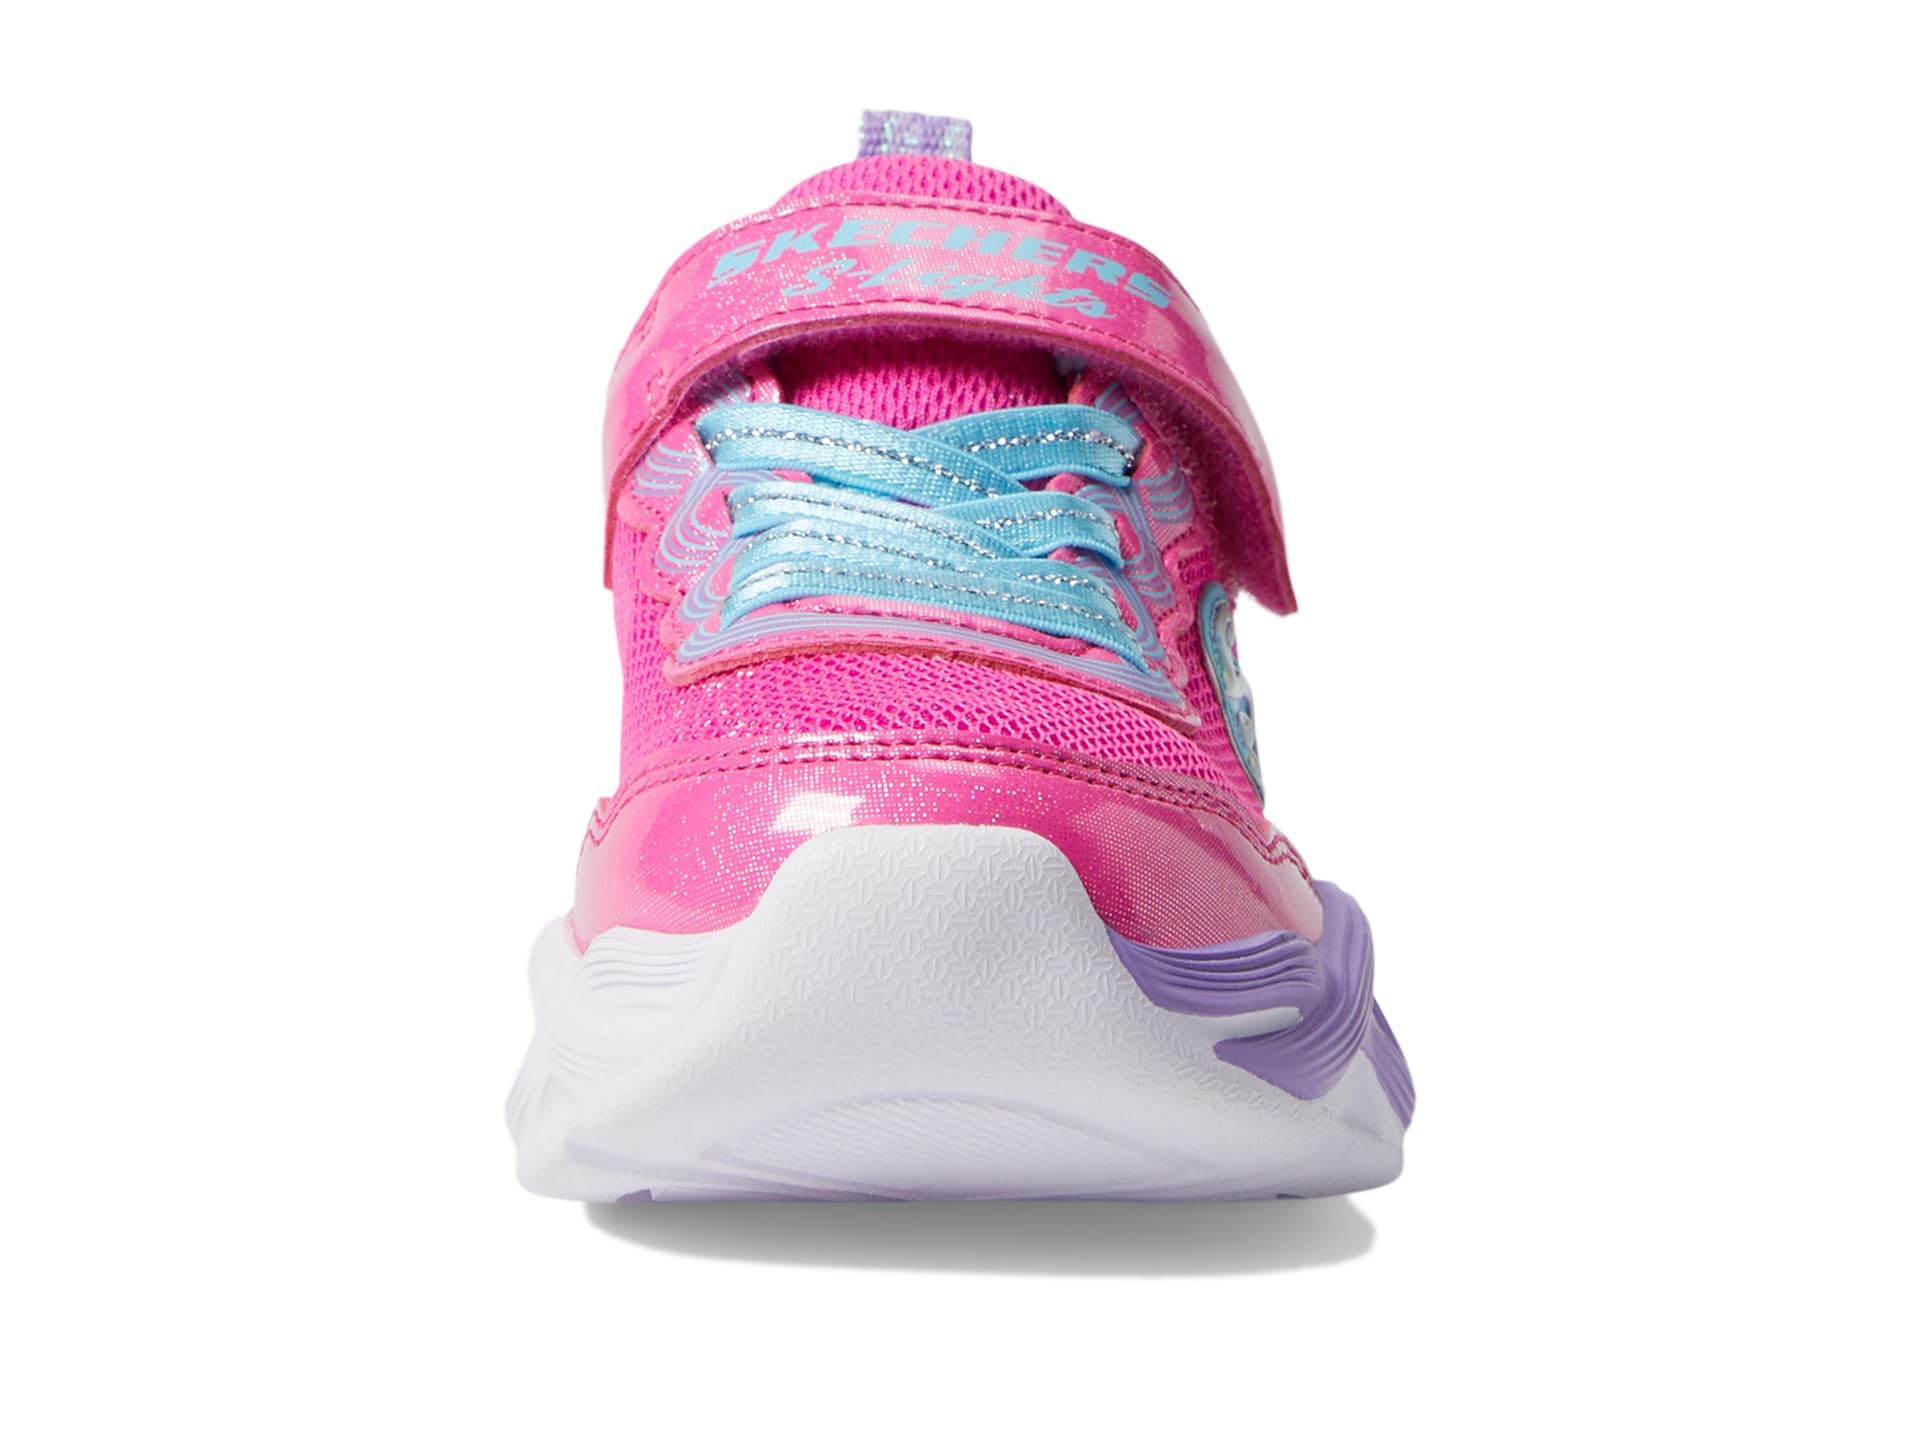 Skechers Girls Twisty Glow Sneaker, Hot Pink/Multi, 11 Little Kid